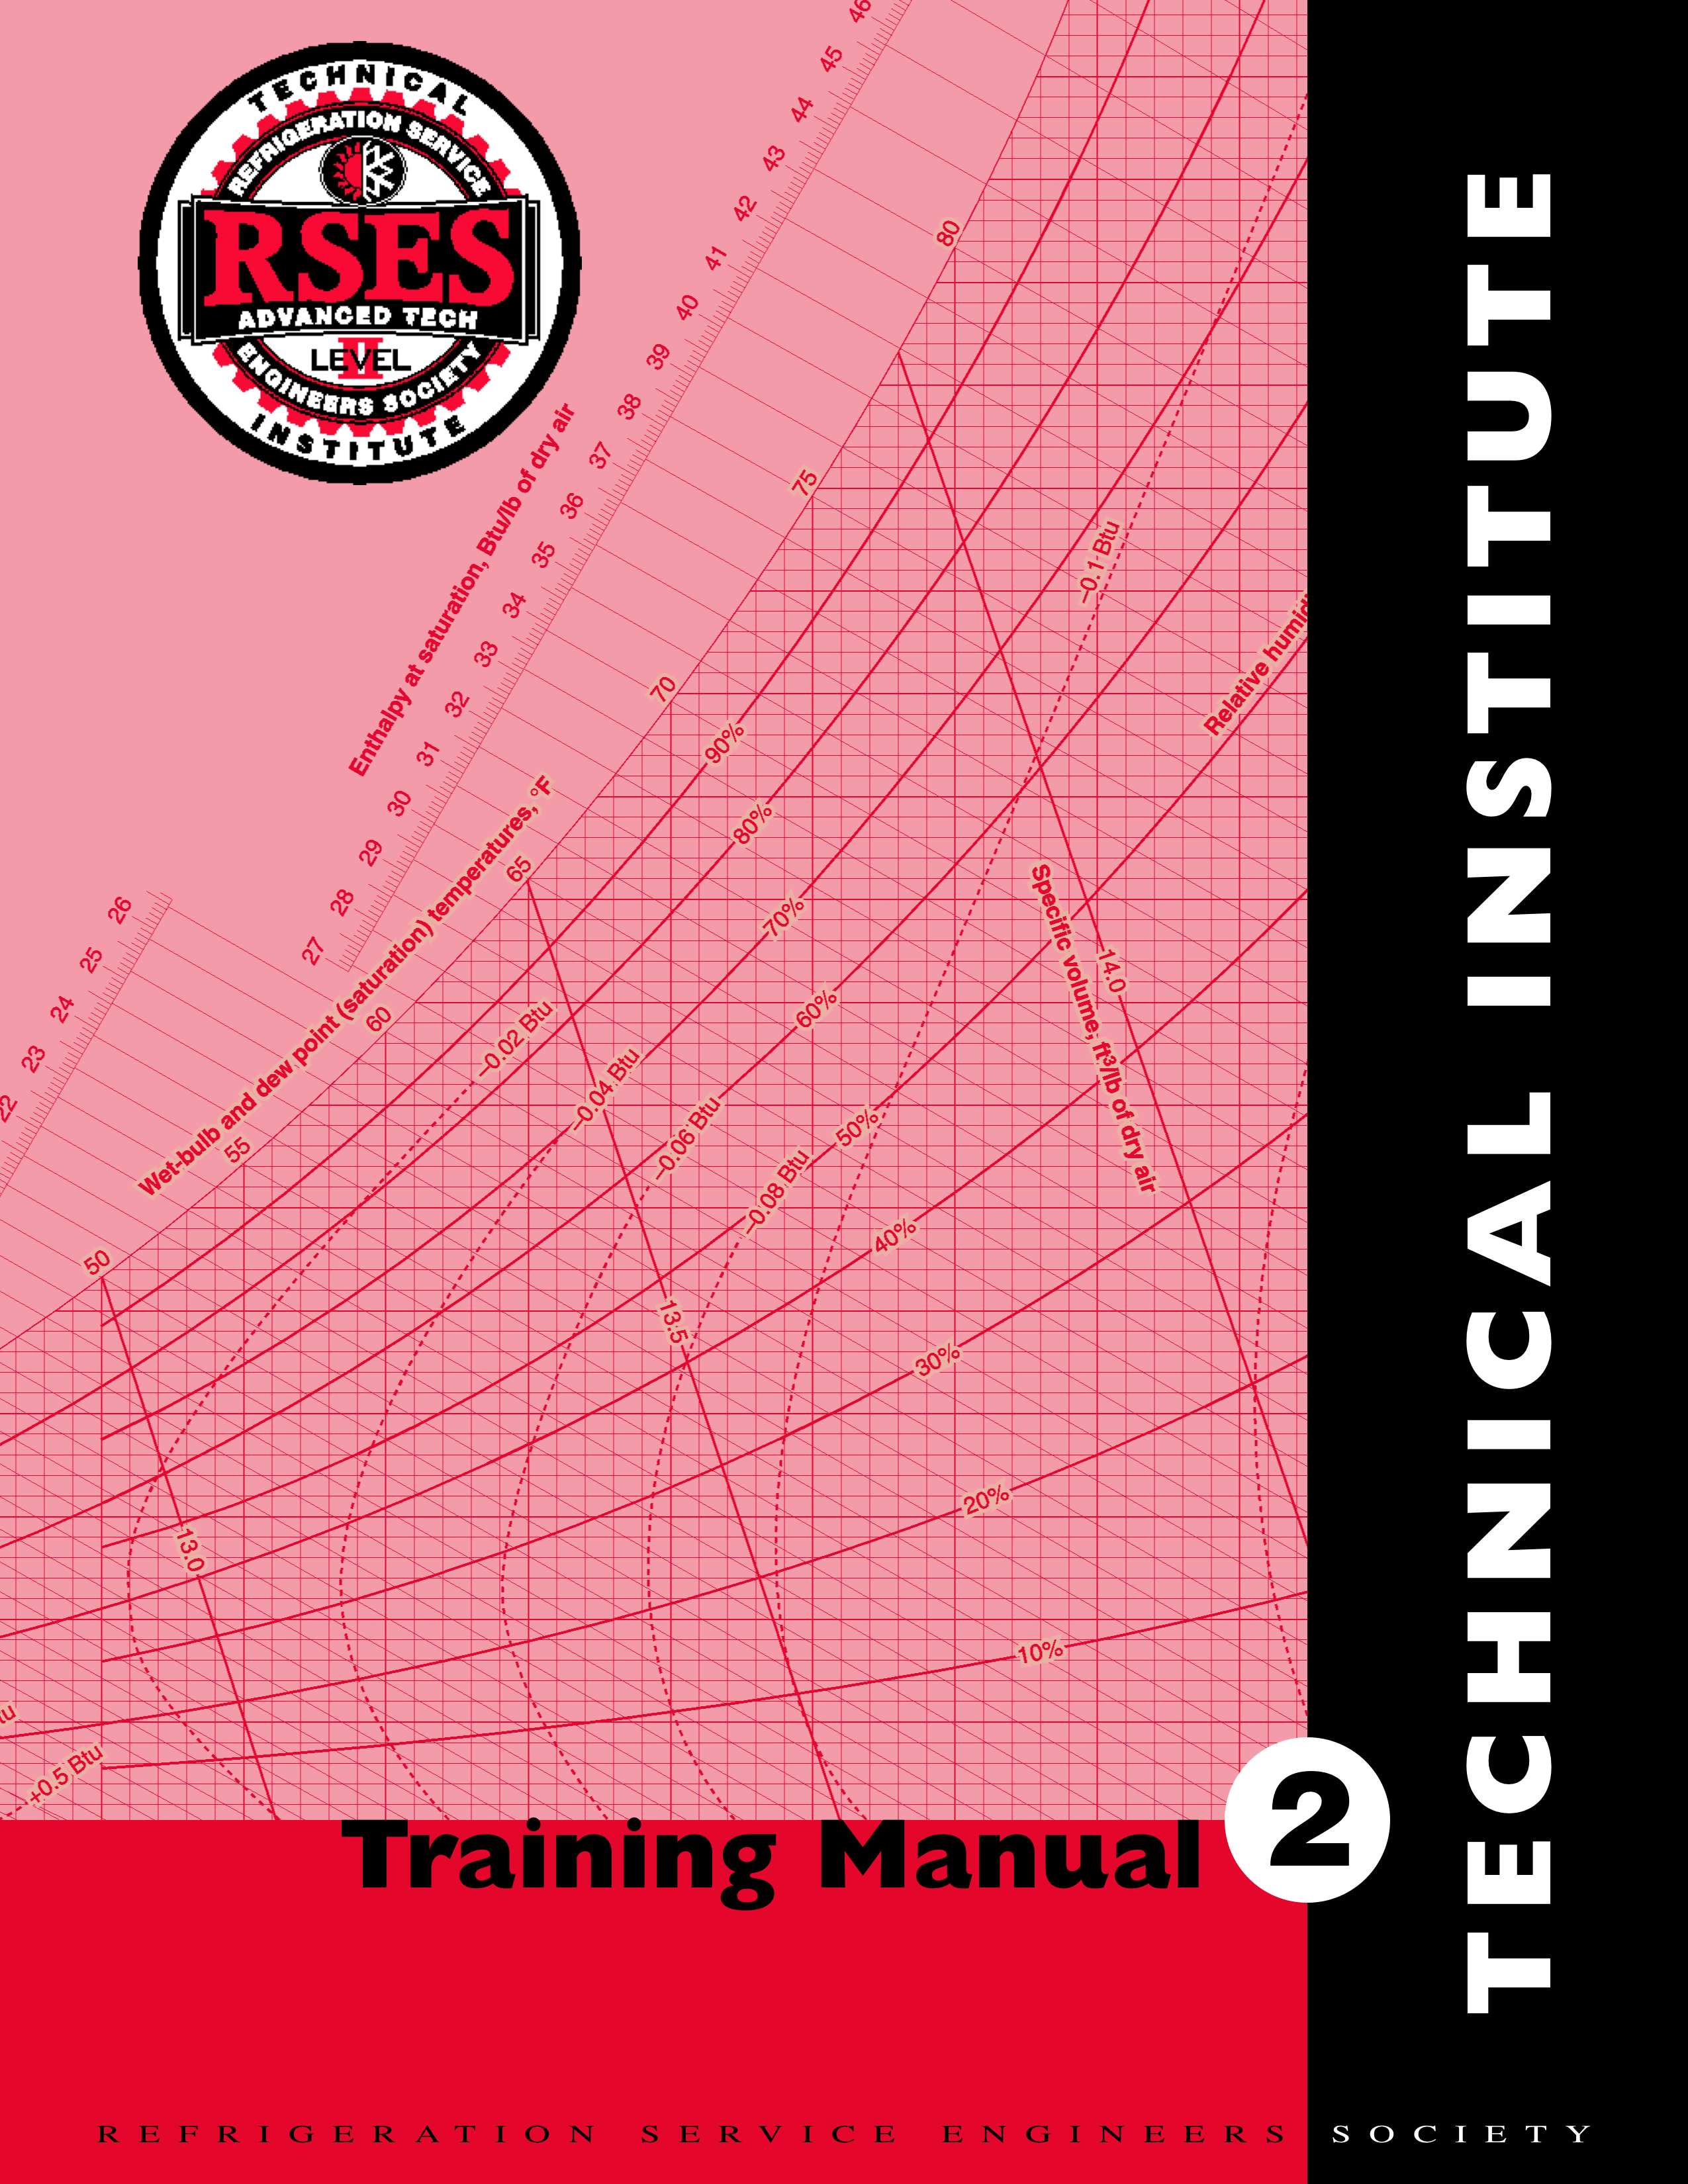 RSES Technical Institute Training Manual 2